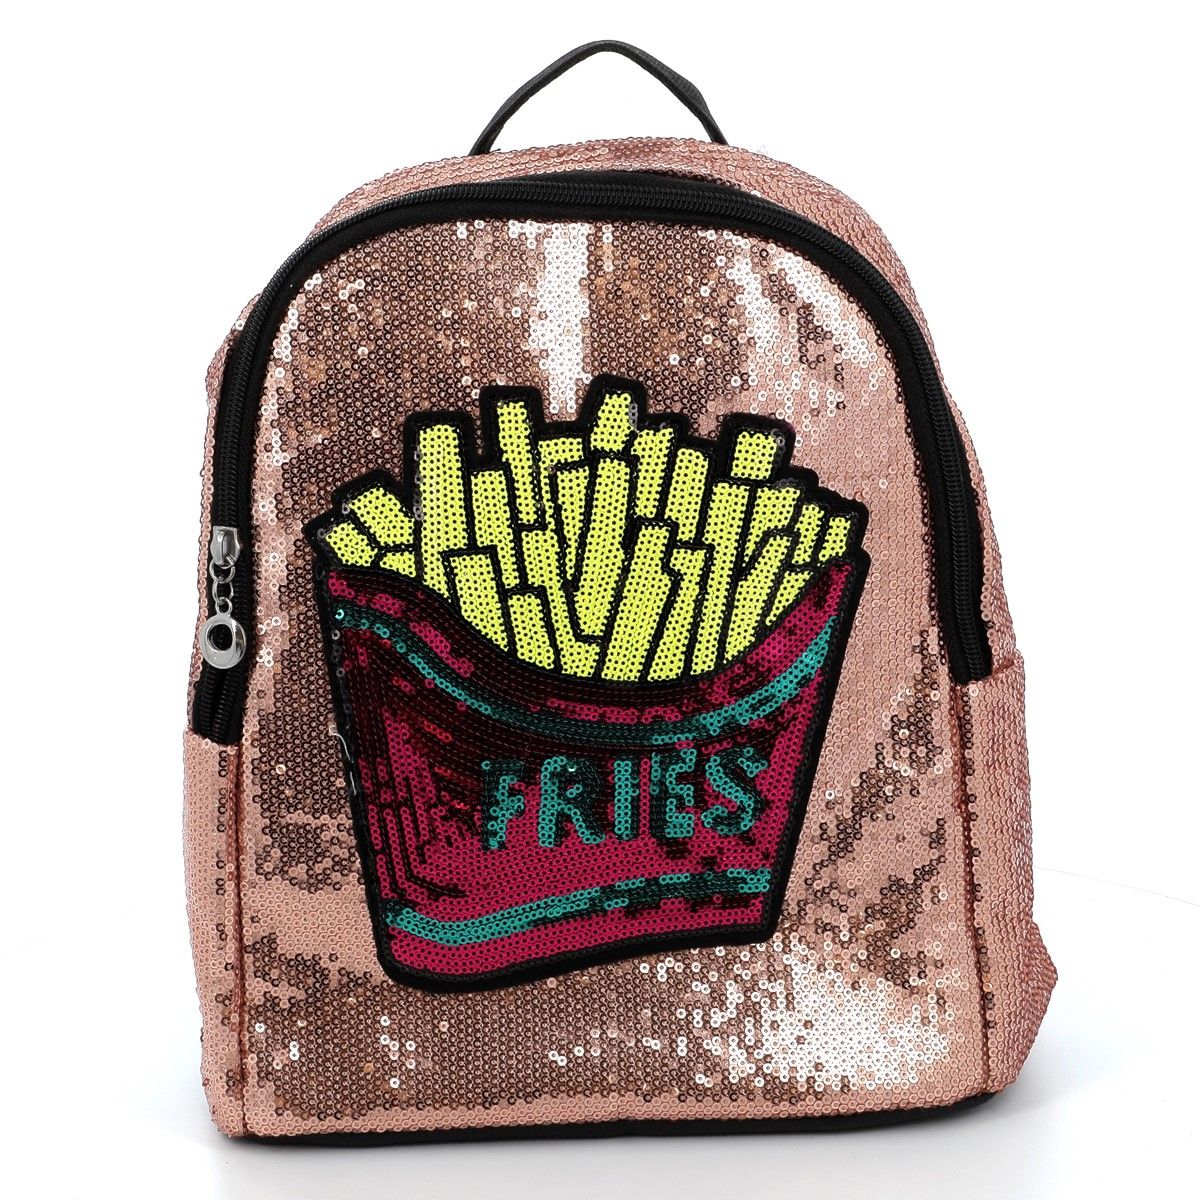 Kylie Τσαντάκι Backpack  B005 - ΡΟΖ